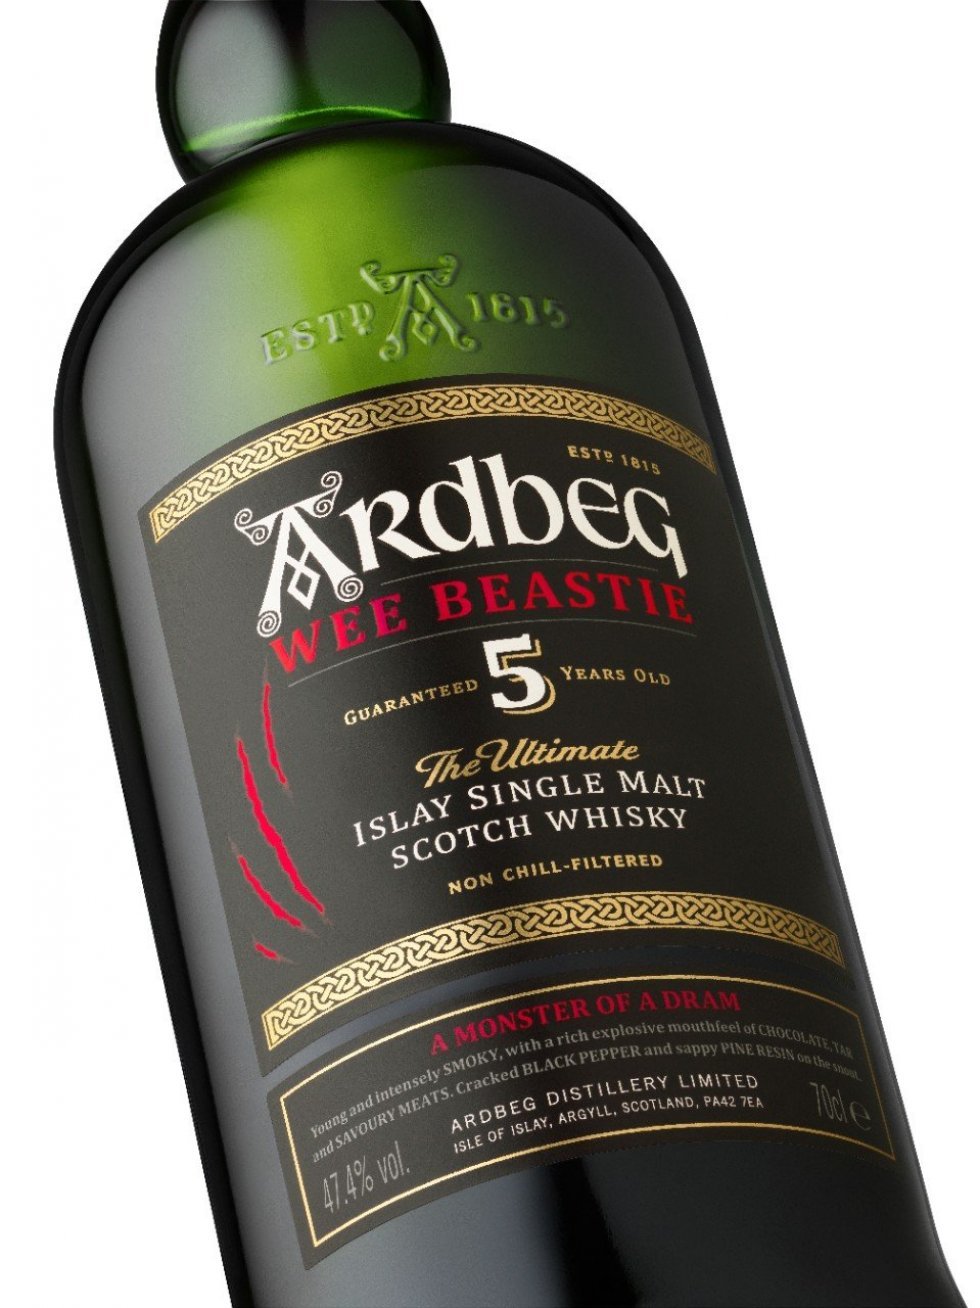 Ardbeg lancerer Wee Beastie: en 5-årig whisky til deres faste sortiment